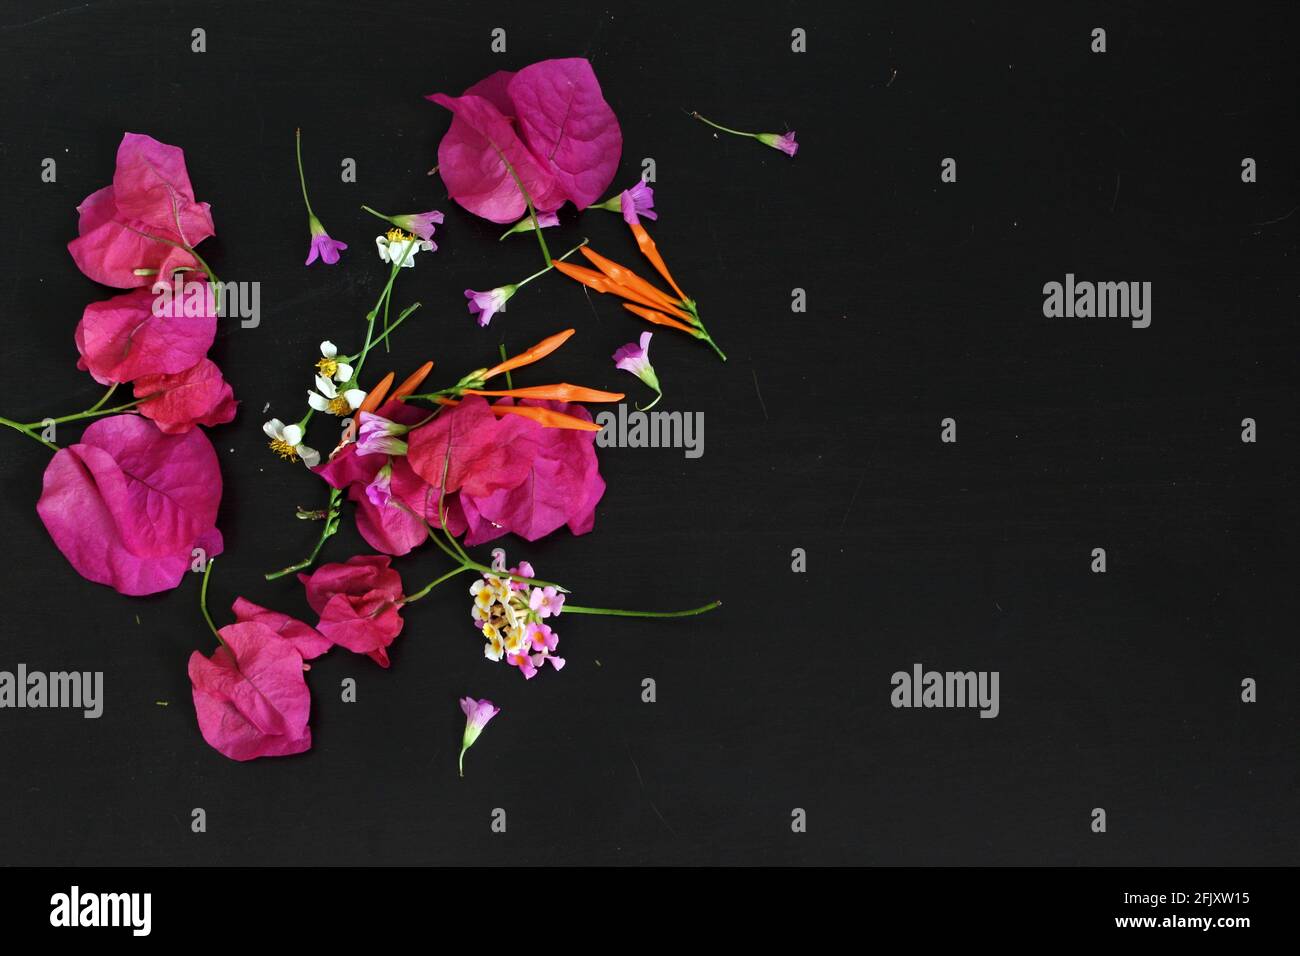 Unordentliche Wildblumen auf schwarzem Hintergrund mit Pedalen und Stielen. Bougainvillea, Feuerbusch, spanische Nadeln. Platz für Text kopieren Stockfoto